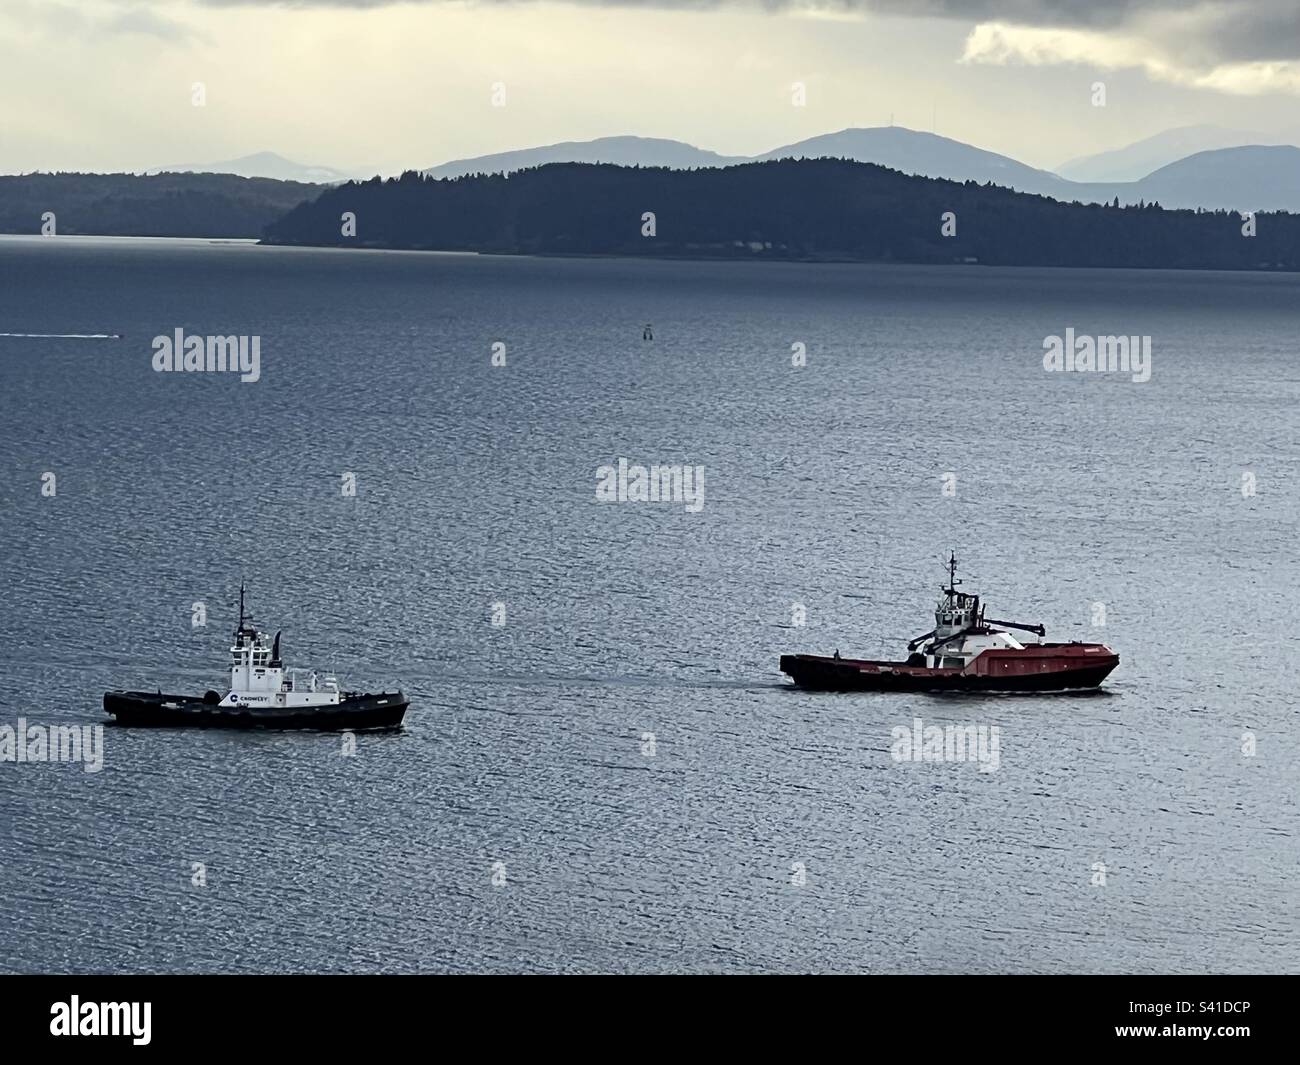 Zwei Schlepper warten auf die Ankunft des Containerschiffs, damit sie beim Anlegen helfen können, um am Hafen von Seattle, Elliot Bay, Puget Sound, WA State, PNW, USA. Olympic Mountains im Hintergrund über der Salish-See. Stockfoto